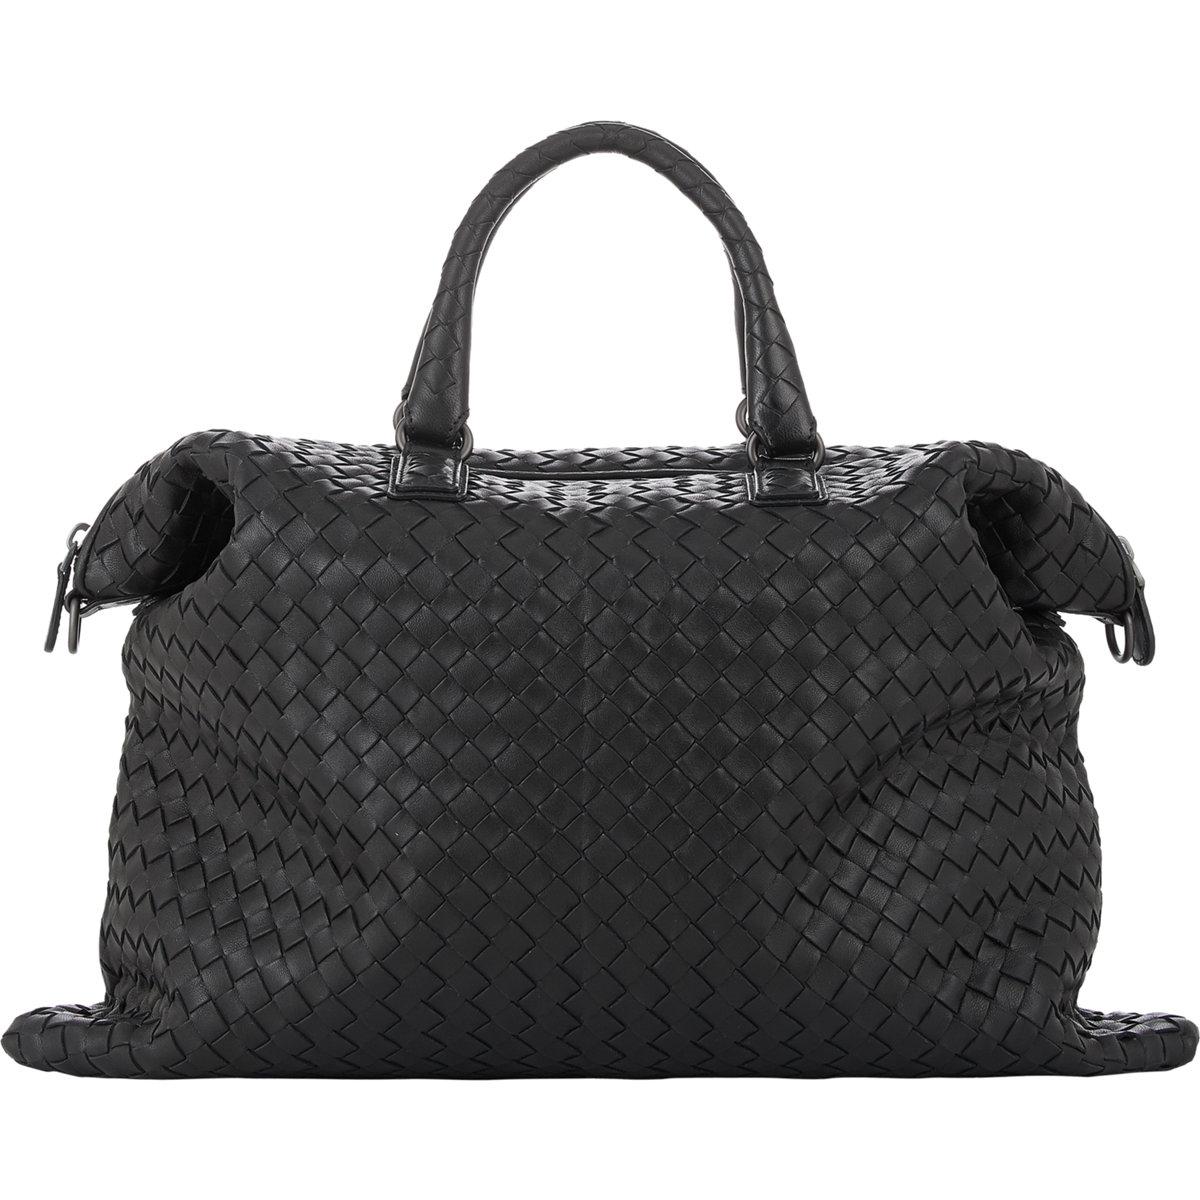 Lyst - Bottega Veneta Shopper Intrecciato Leather Tote in Black